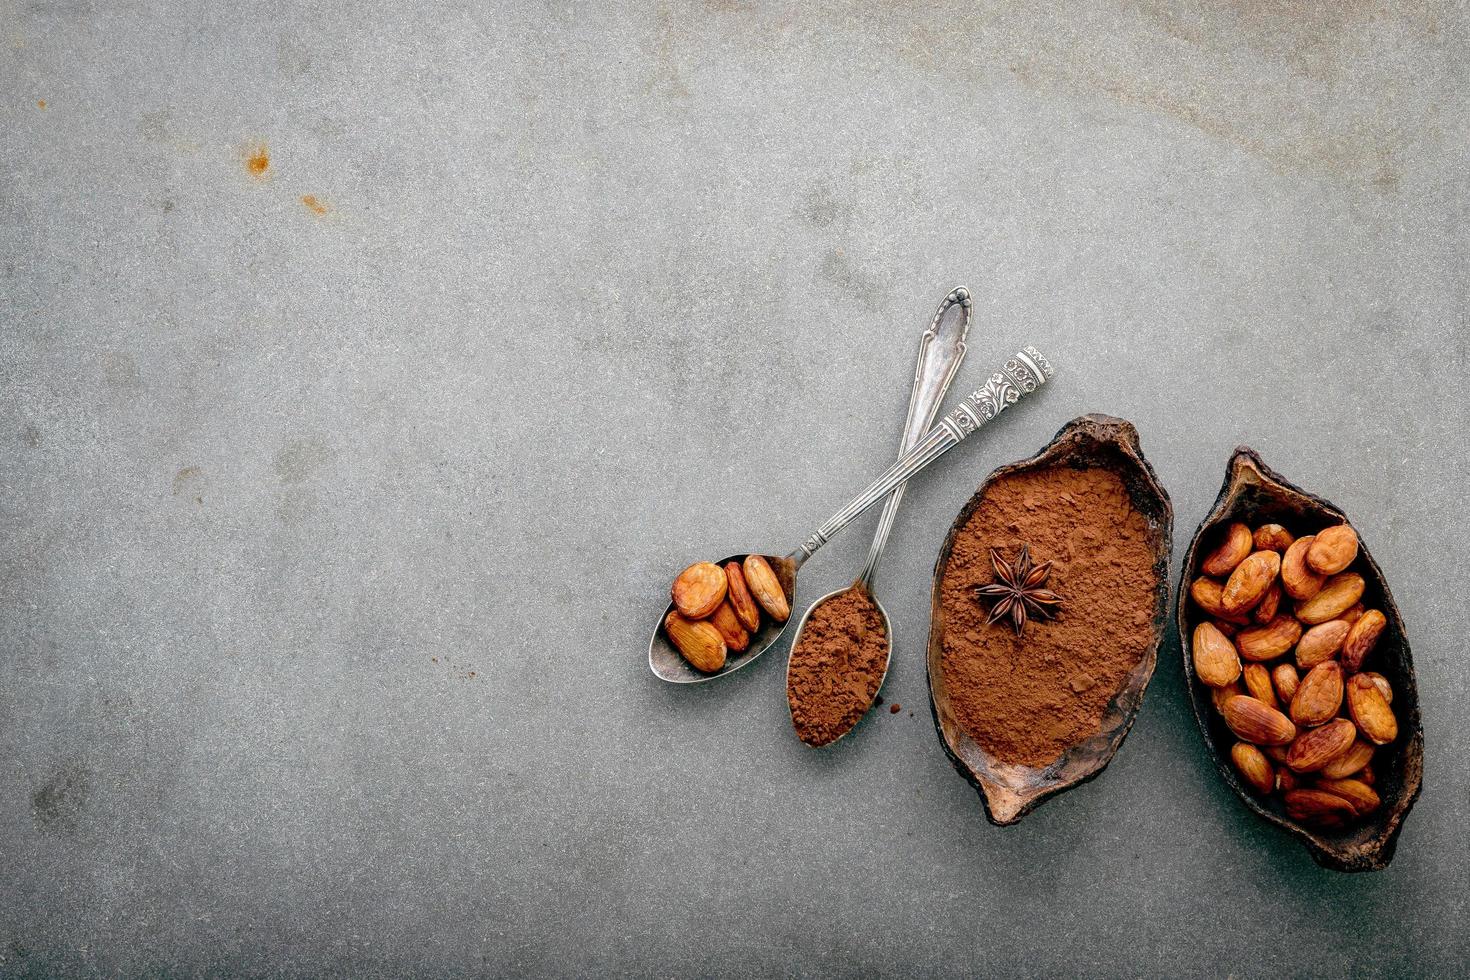 kakaopulver och kakaobönor på betong foto